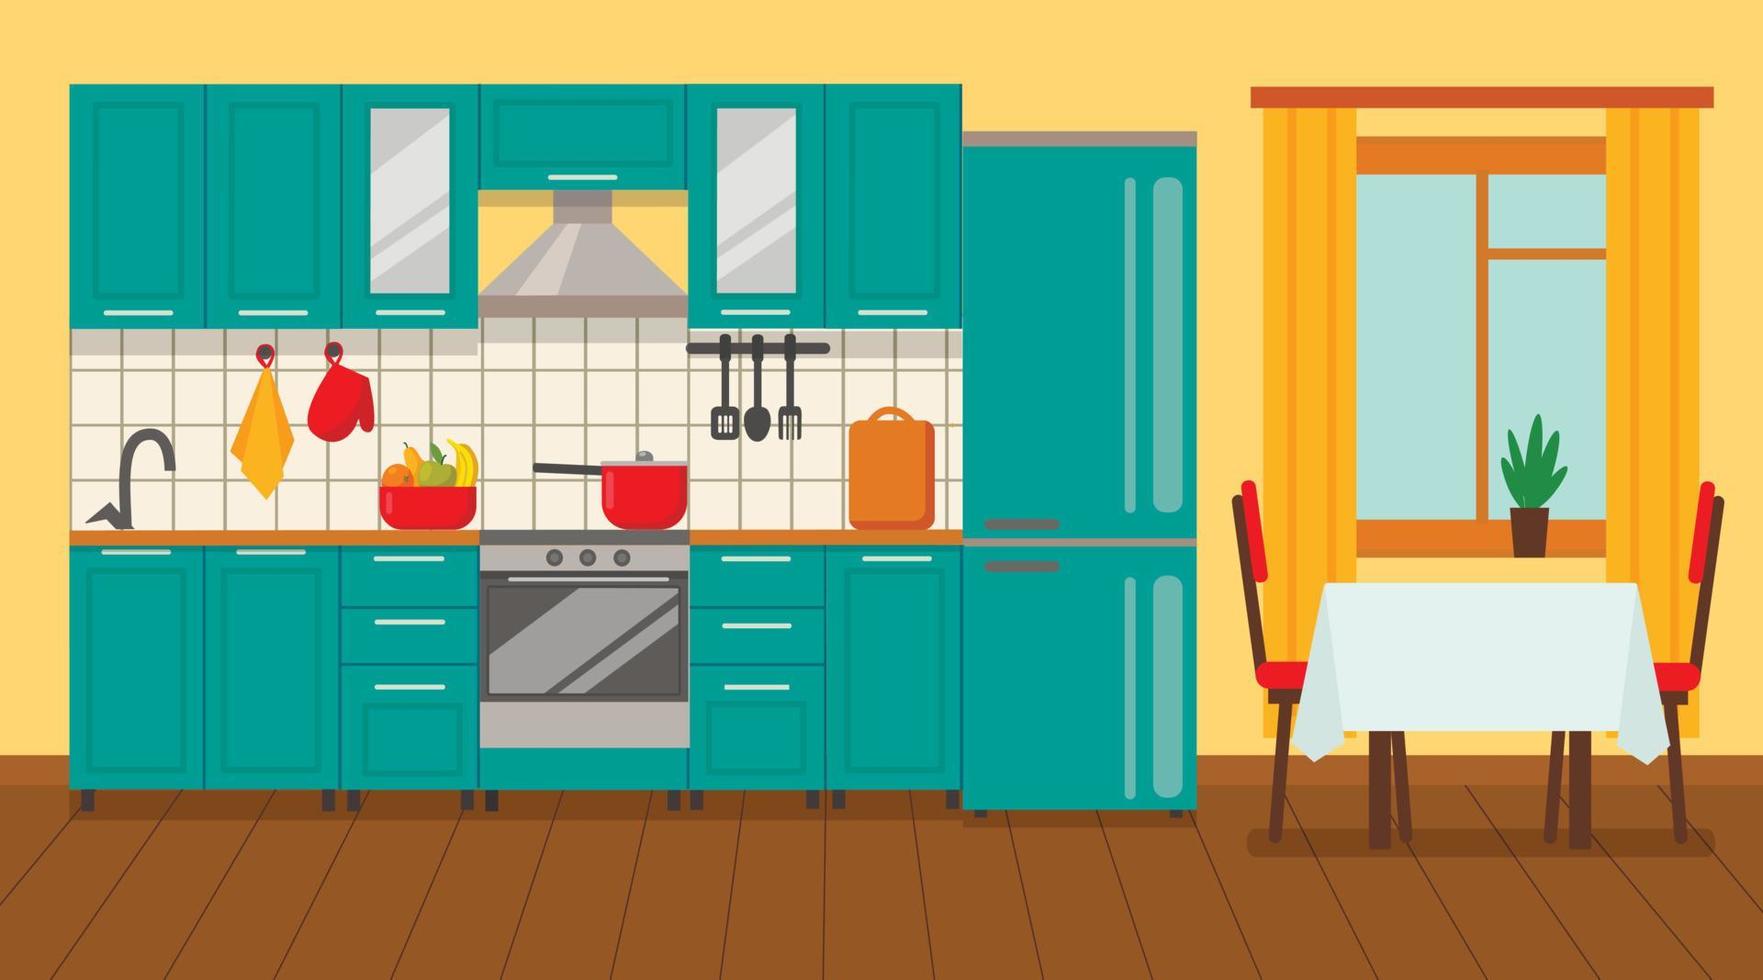 interior da cozinha com móveis e fogão, armário, pratos, geladeira e utensílios. ilustração em vetor estilo cartoon plana.